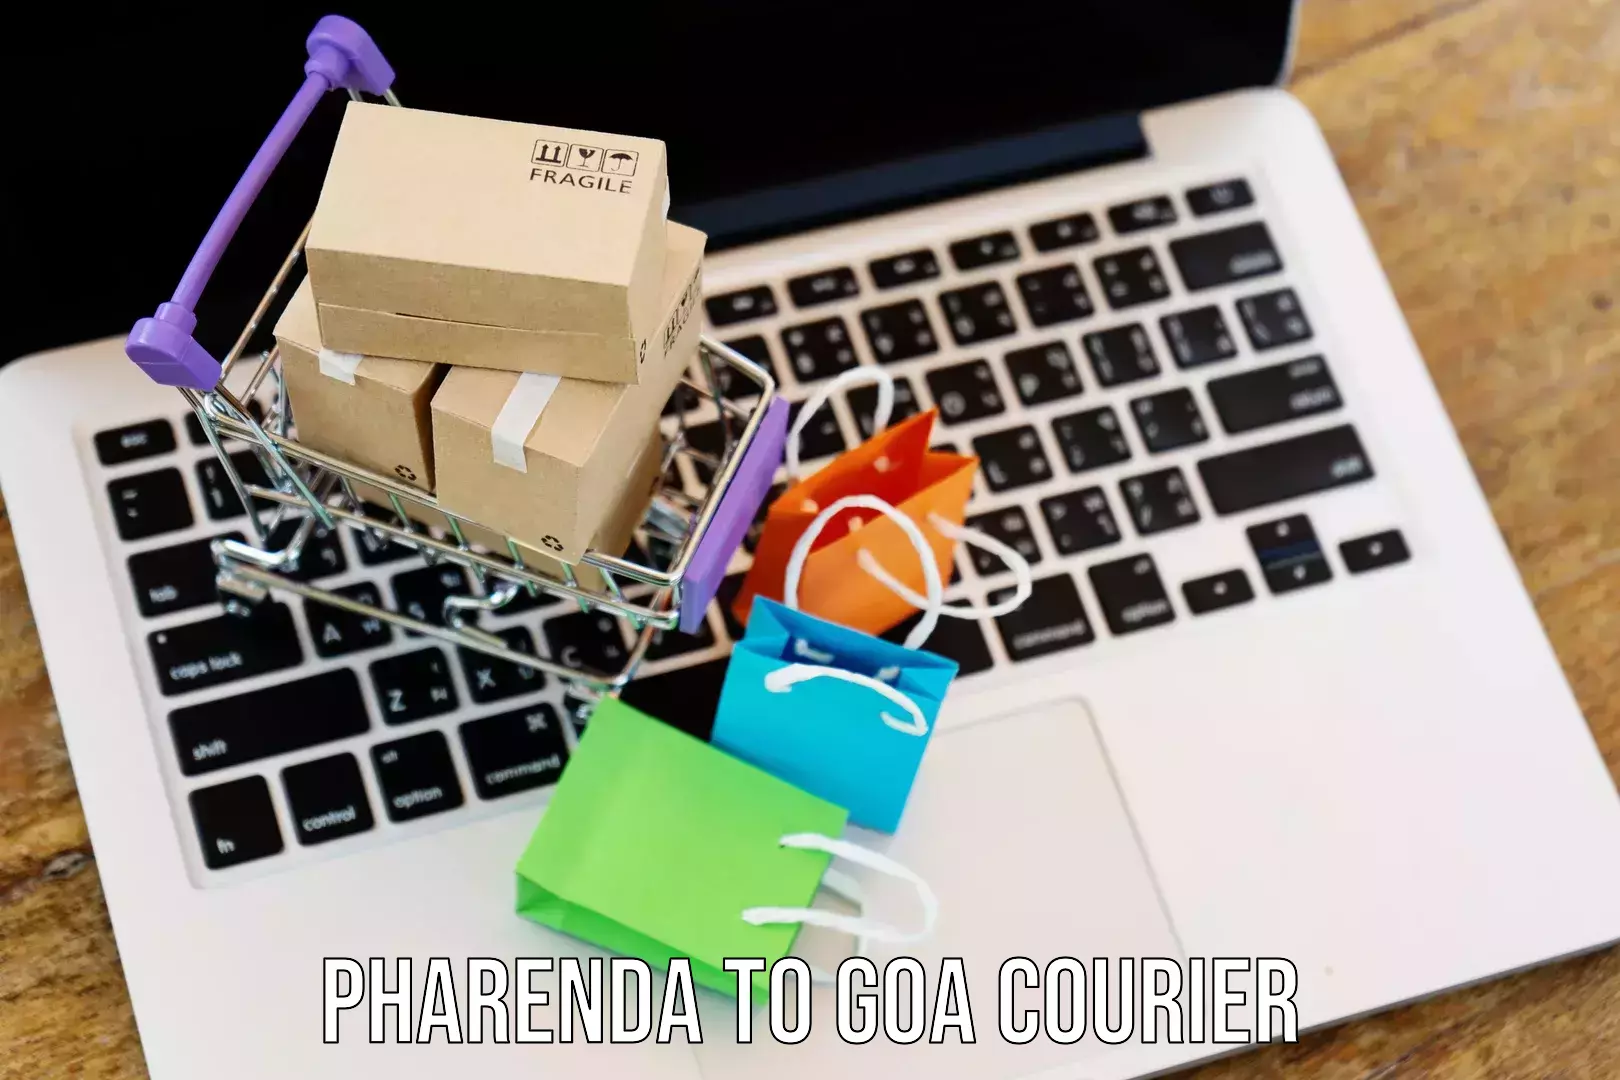 Courier service comparison in Pharenda to Goa